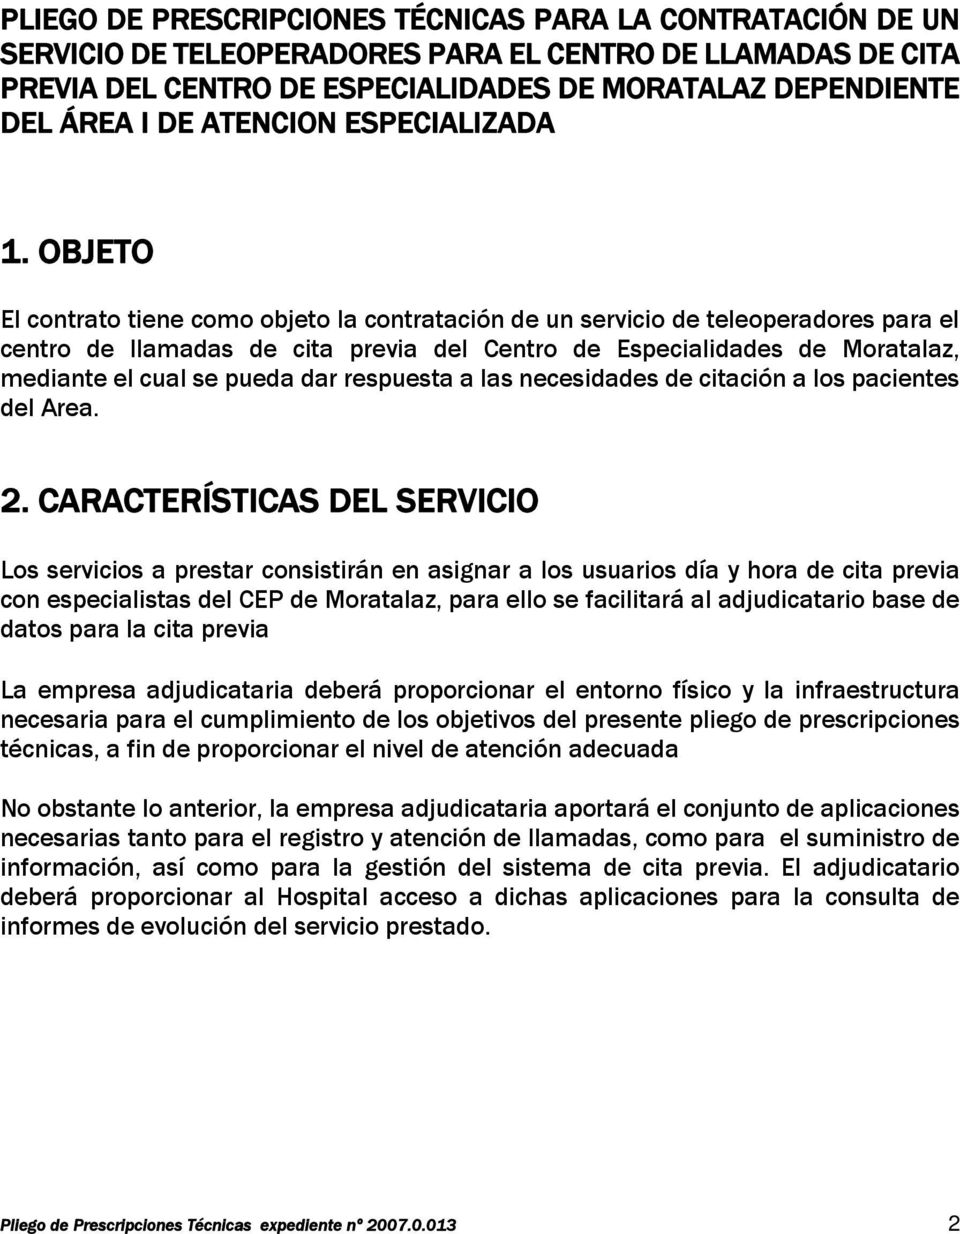 OBJETO El contrato tiene como objeto la contratación de un servicio de teleoperadores para el centro de llamadas de cita previa del Centro de Especialidades de Moratalaz, mediante el cual se pueda